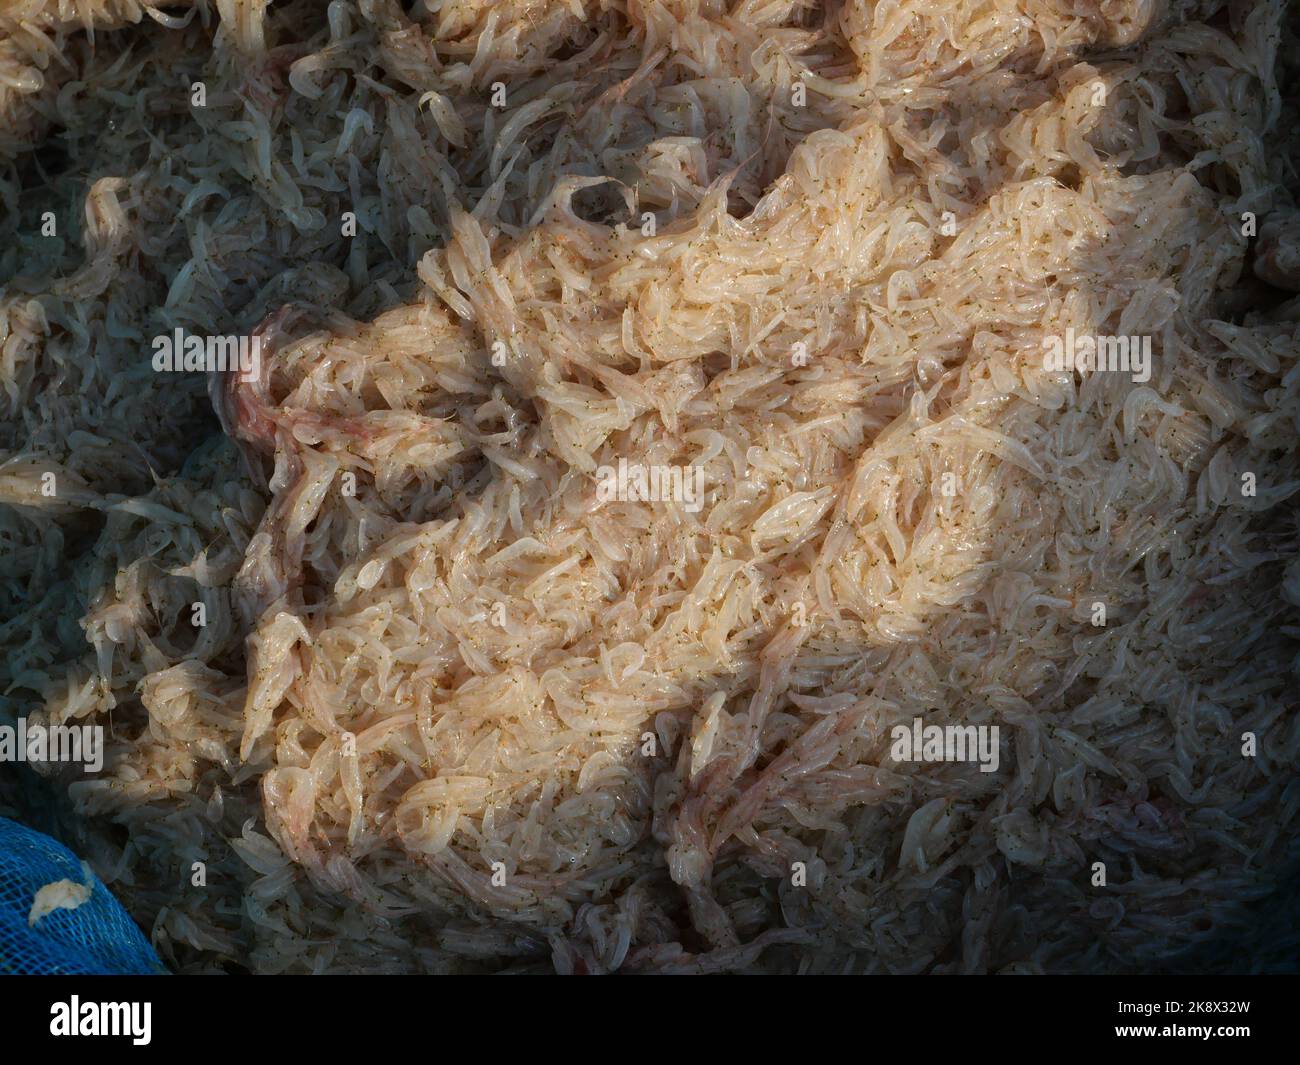 Gruppo di gamberetti freschi di Krill o Opossum, Plankton che i pescatori intrappolano per cucinare Foto Stock